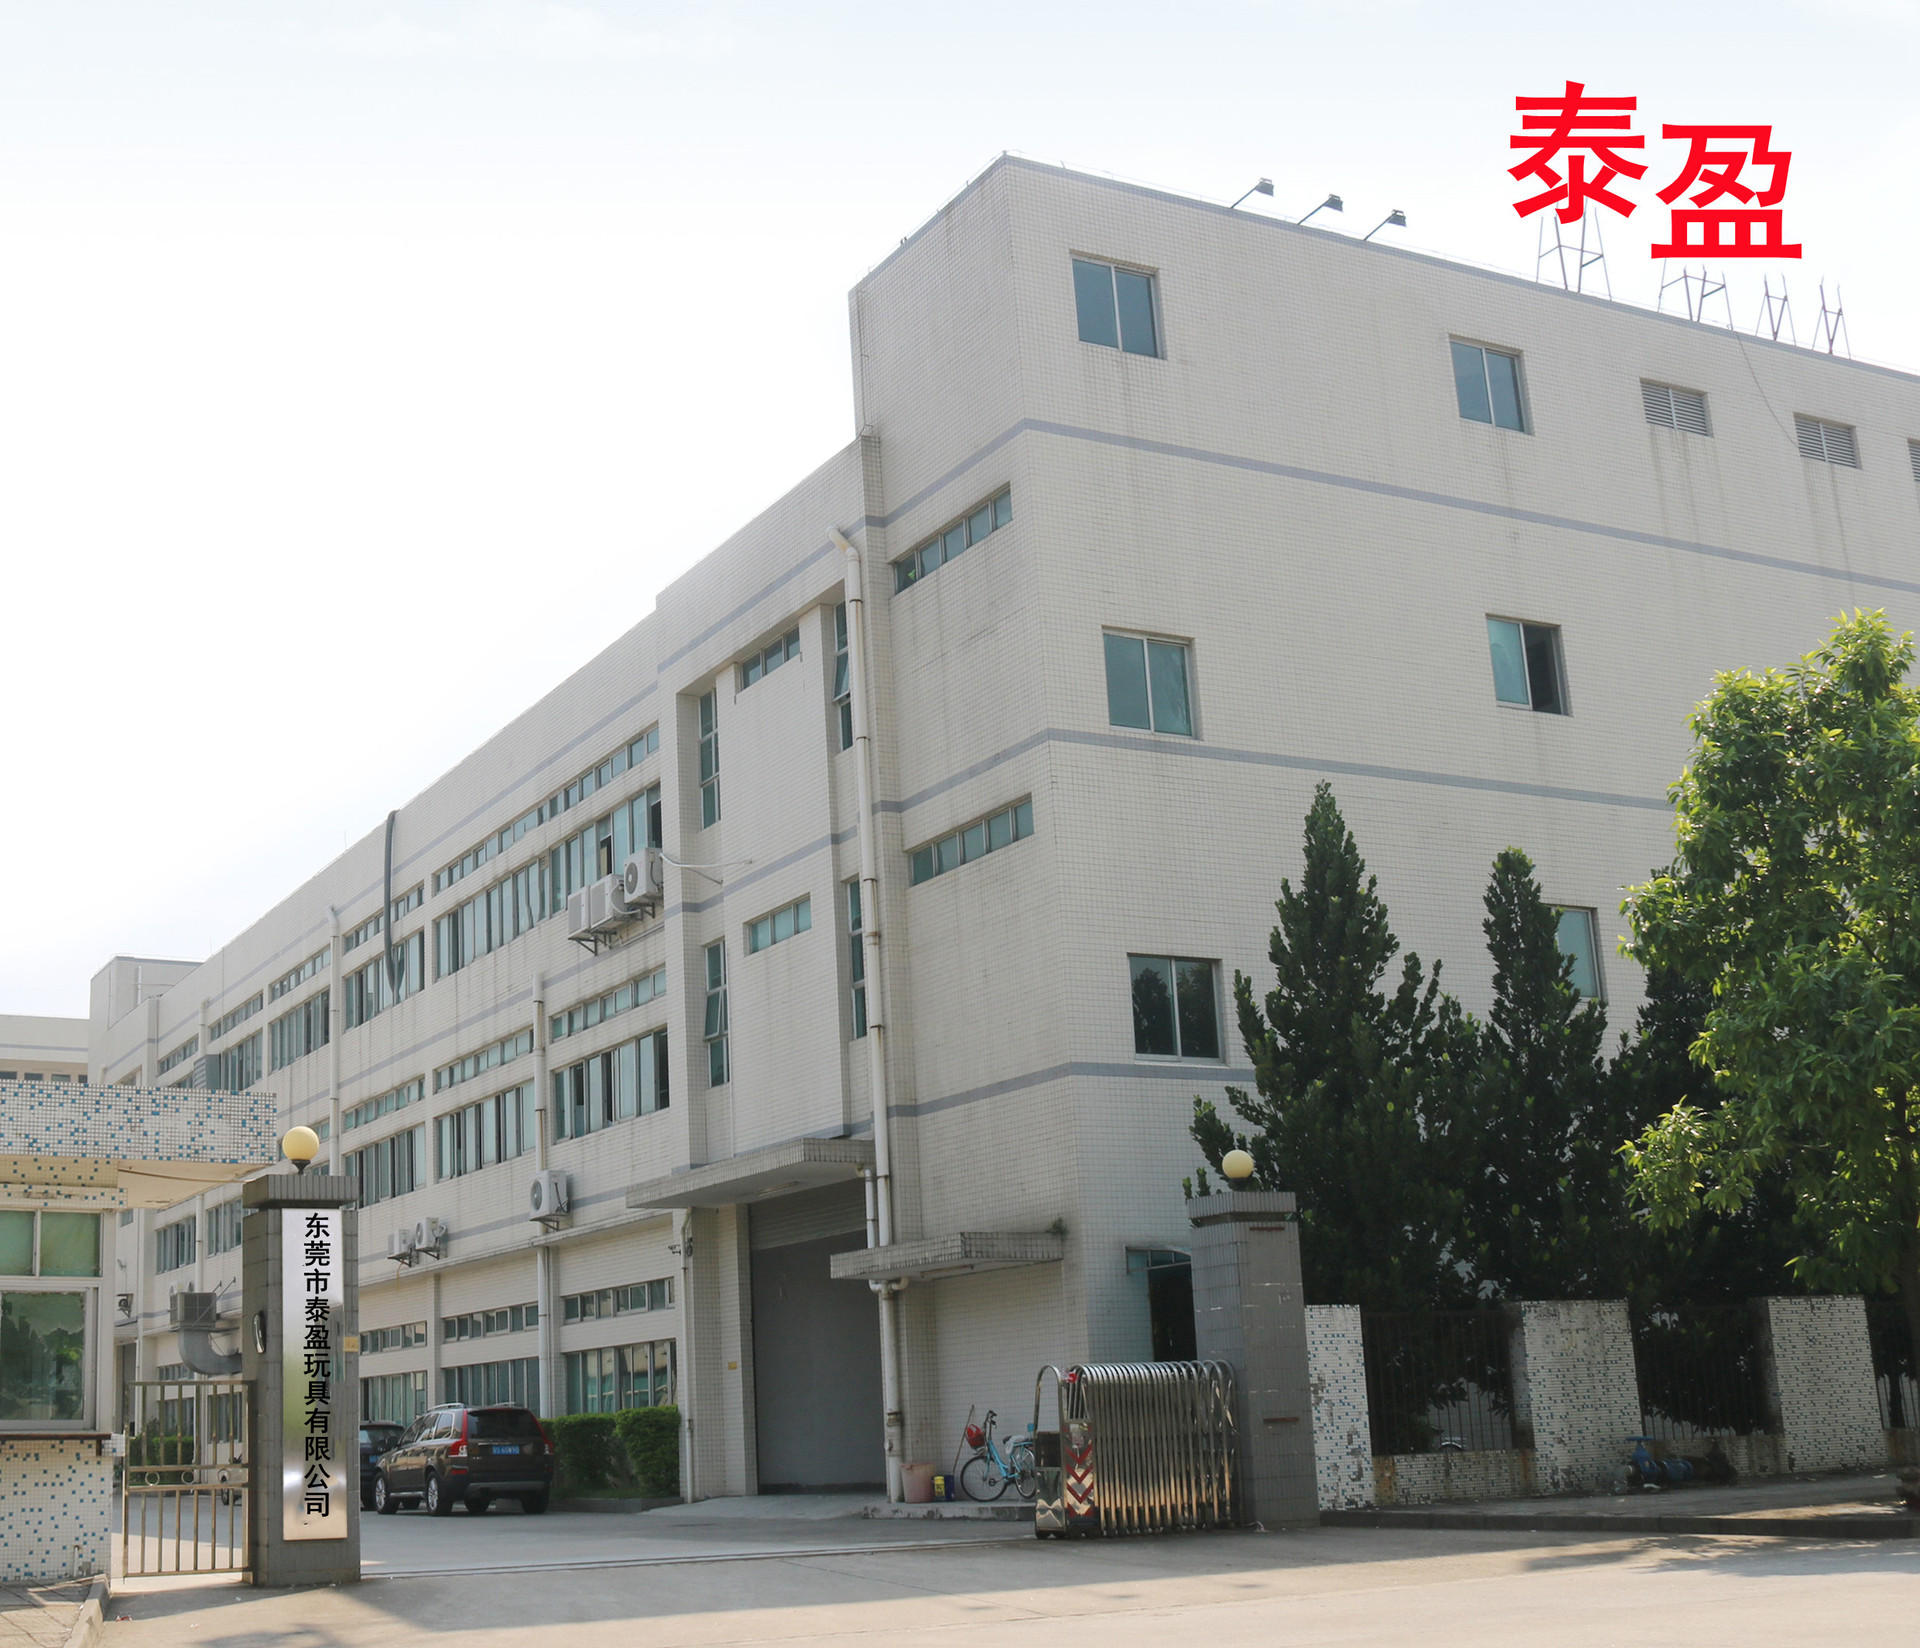 Dongguan Taiying Toys Co., Ltd